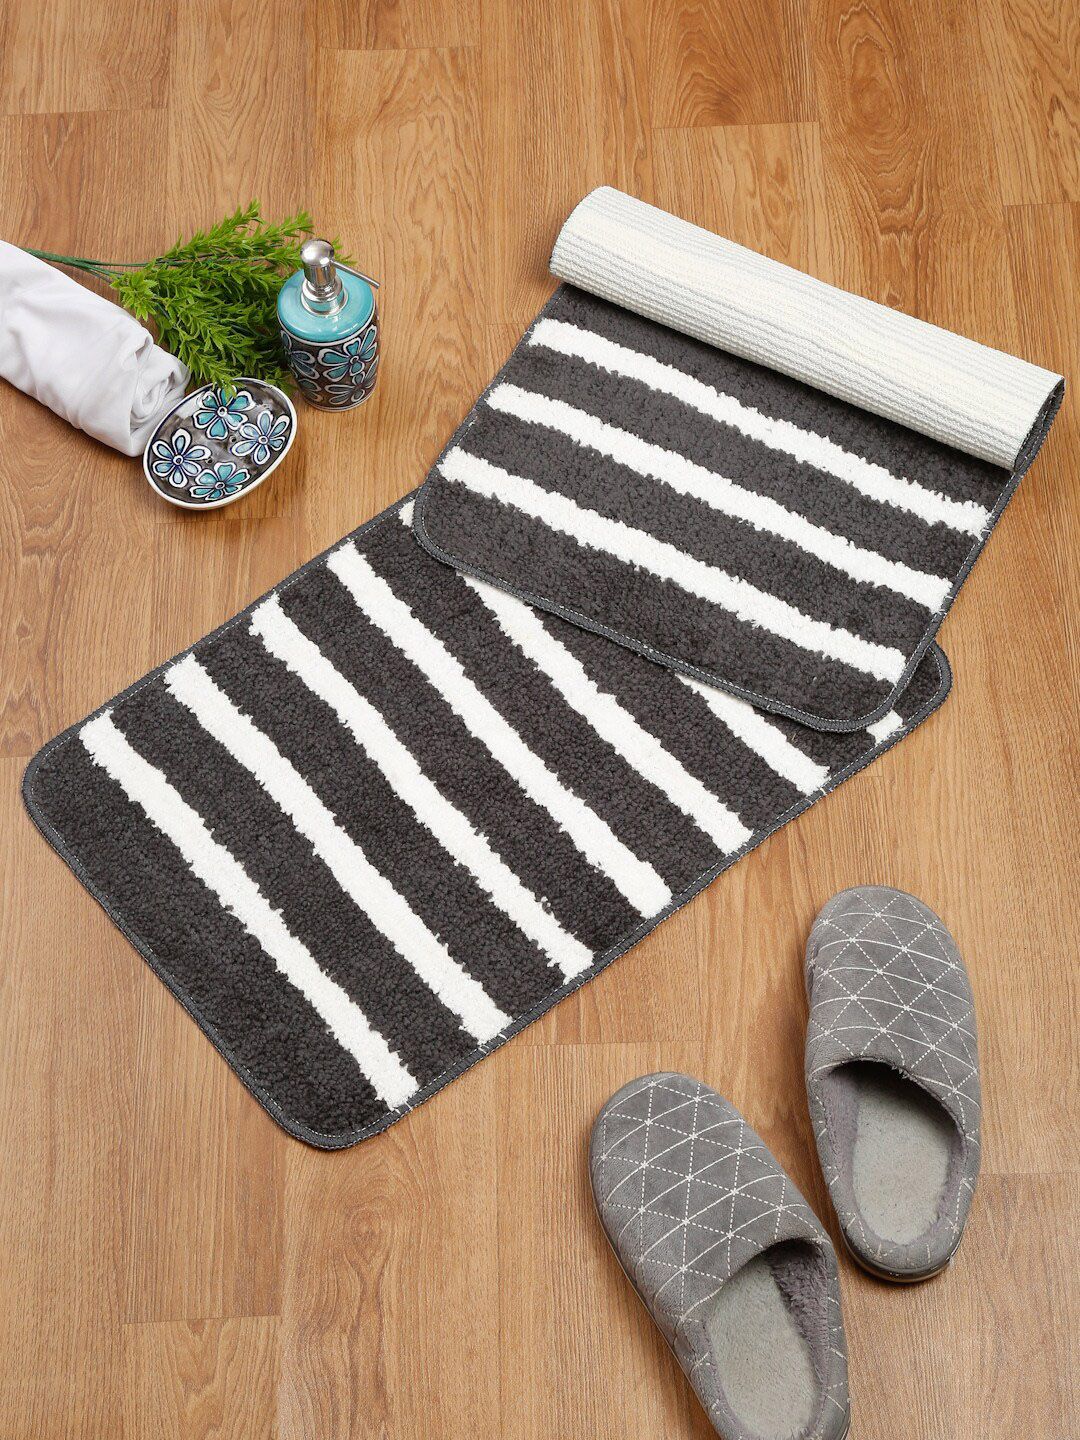 SOKNACK Set Of 2 Black & White Striped Anti-Skid Doormats Price in India